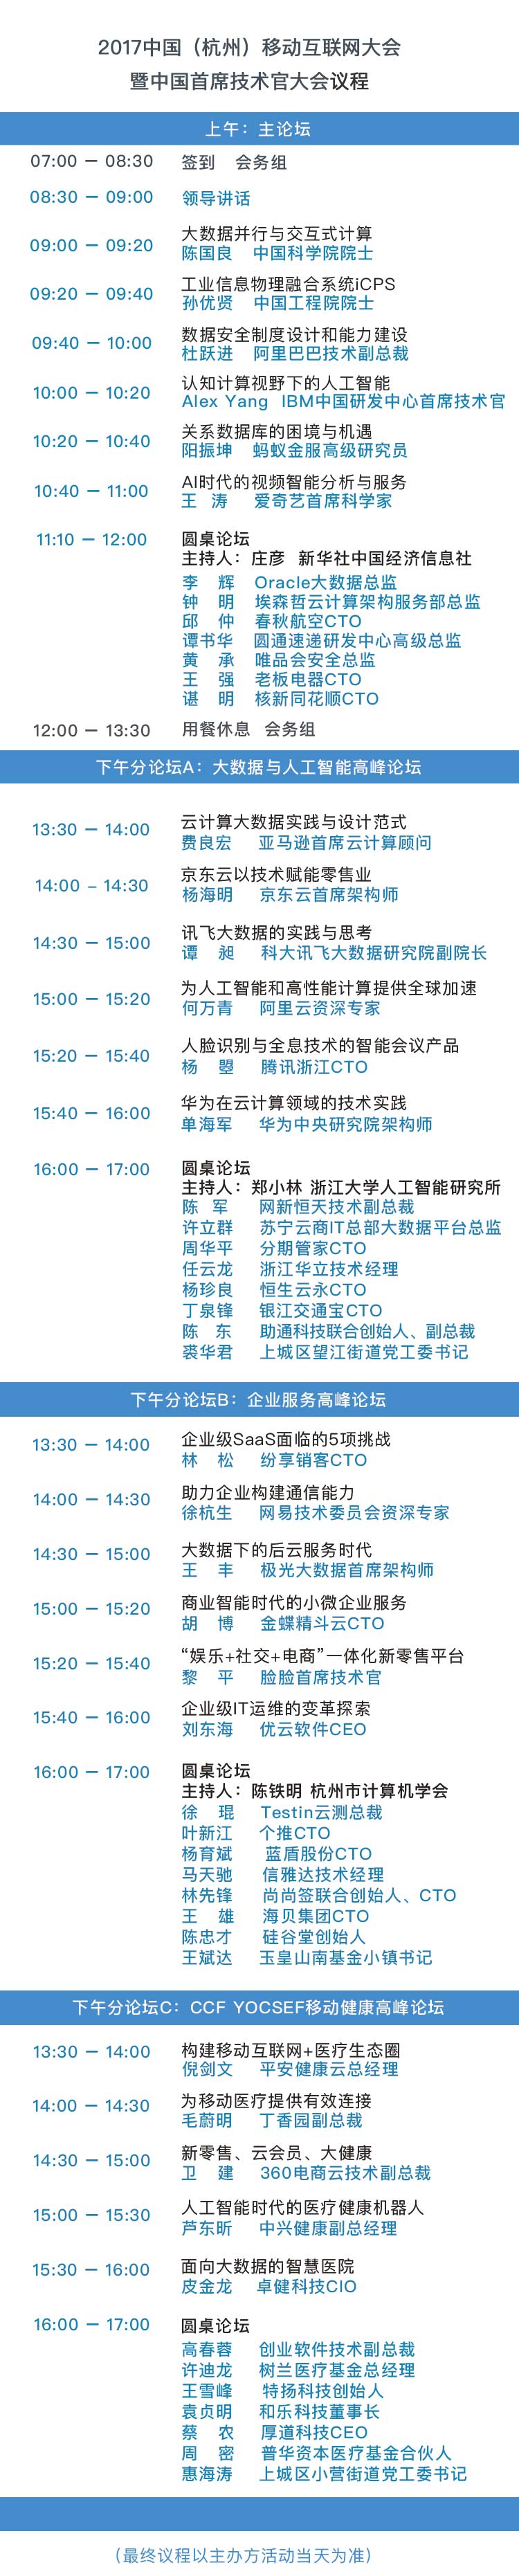 2017中国首席技术官大会暨第四届中国（杭州）移动互联网大会